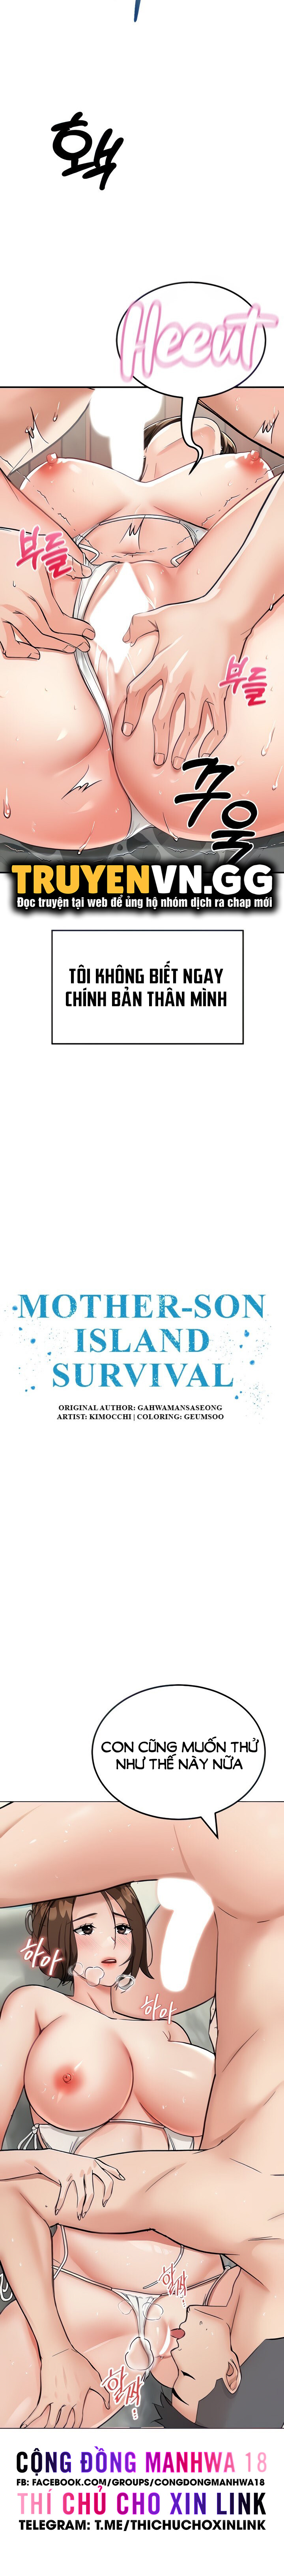 Sinh Tồn Trên Đảo Hoang Cùng Mẹ Yêu Chapter 4 - Trang 2